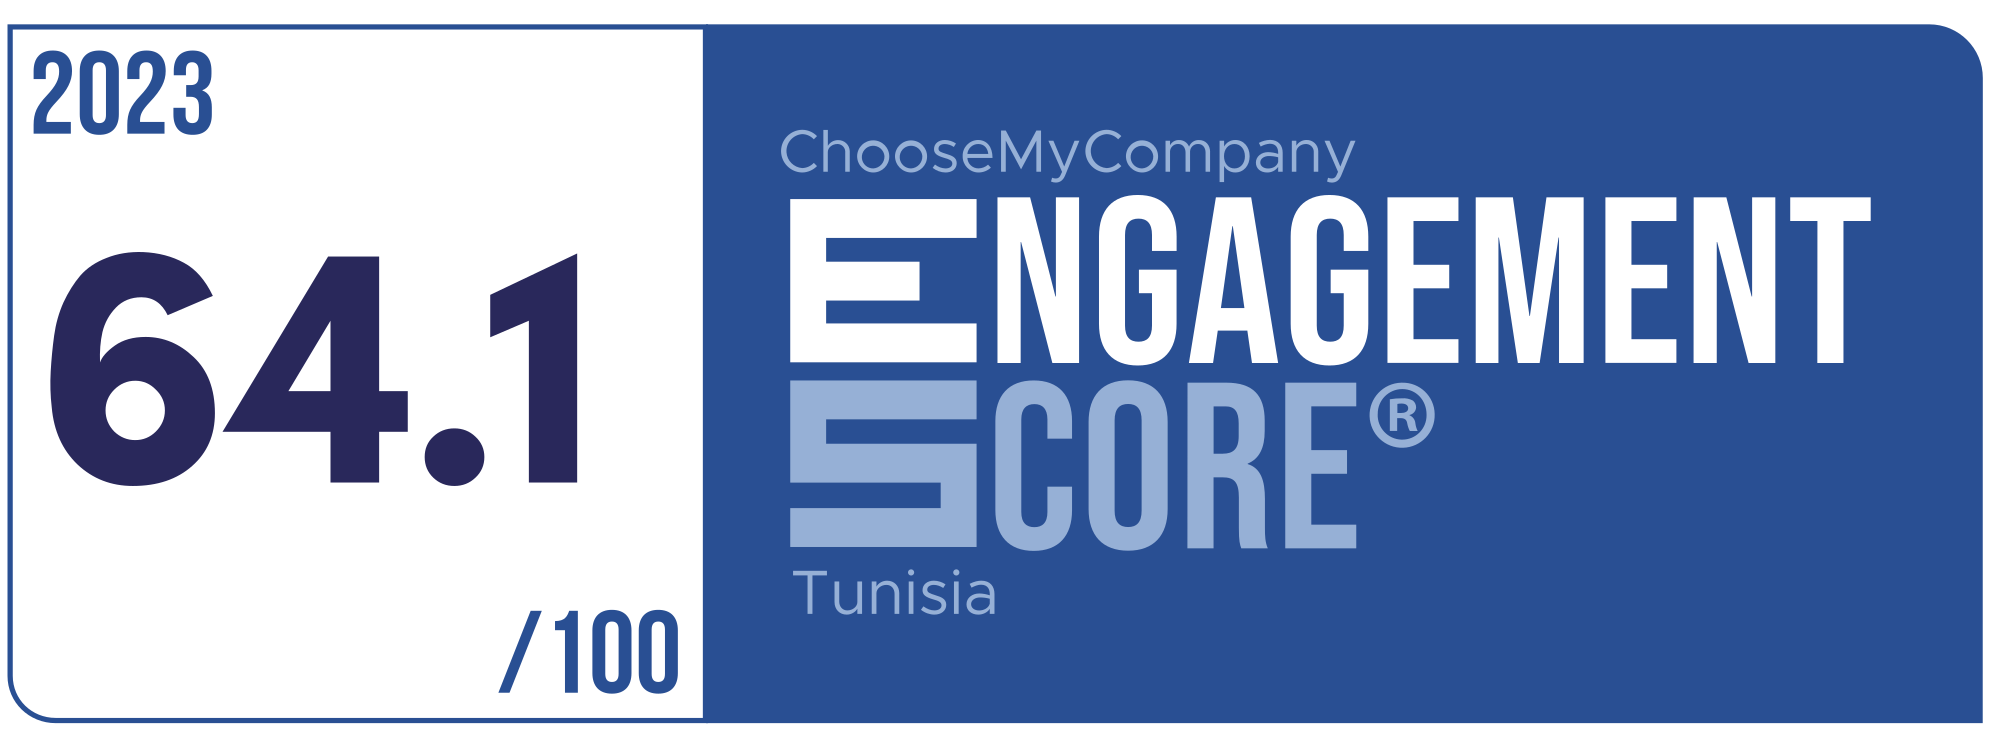 Label Engagement Score 2023 Tunisia